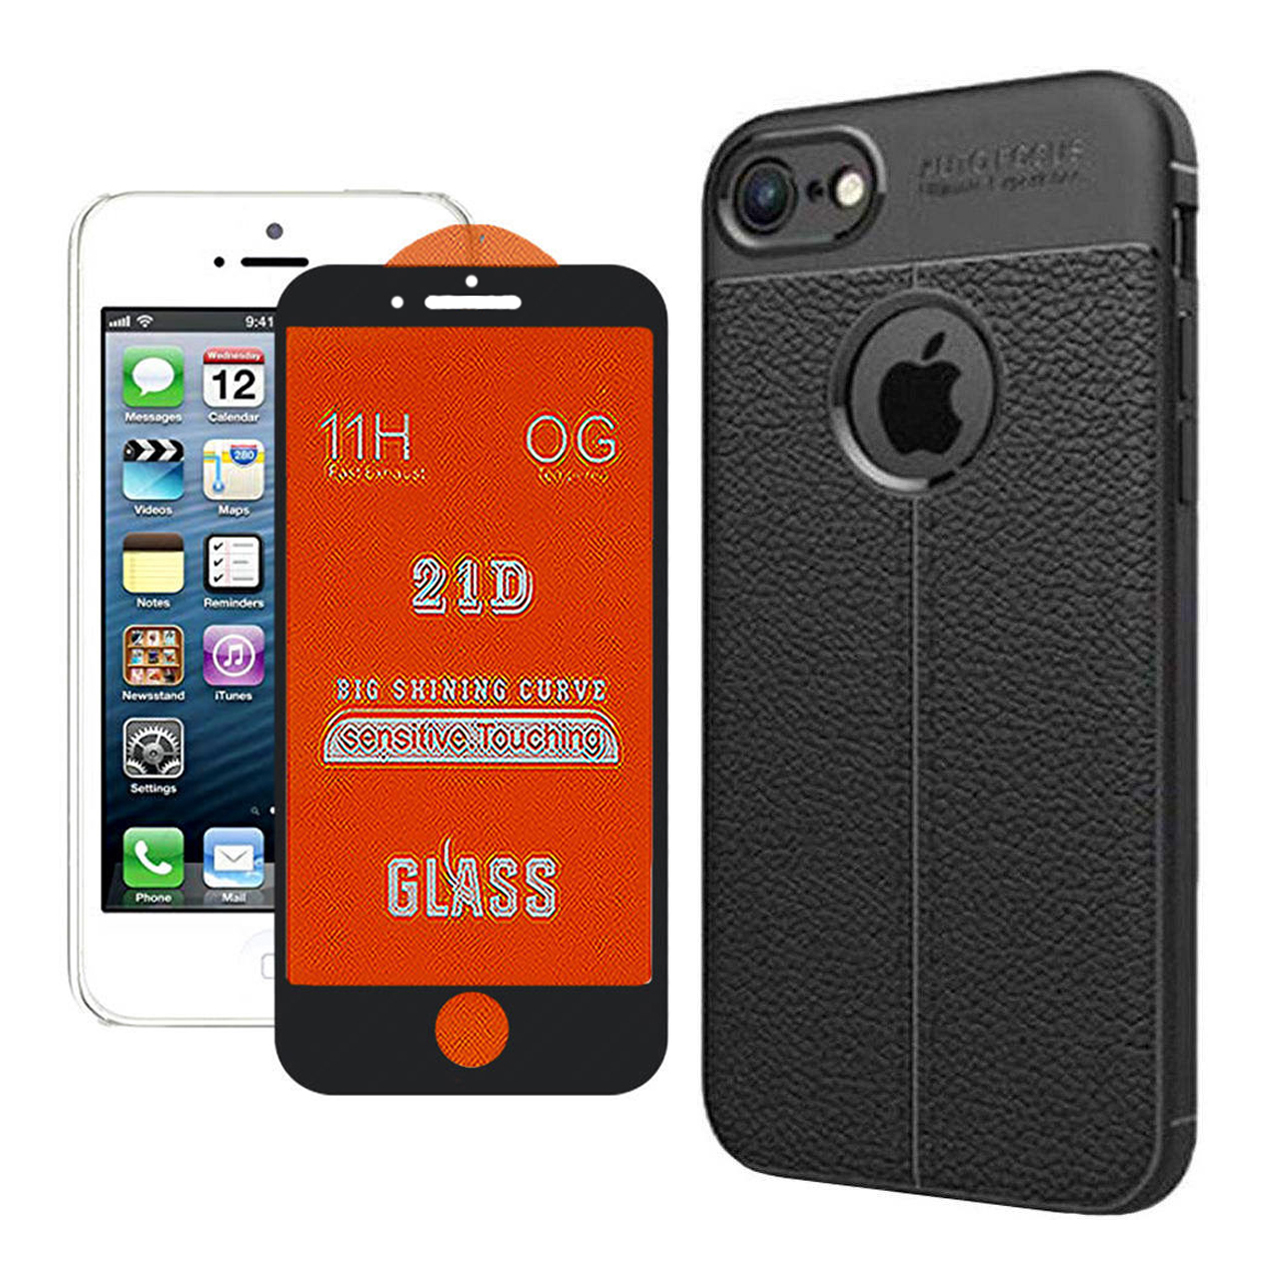 کاور مورفی مدل AG21 مناسب برای گوشی موبایل اپل Iphone 5/5s/SE به همراه محافظ صفحه نمایش